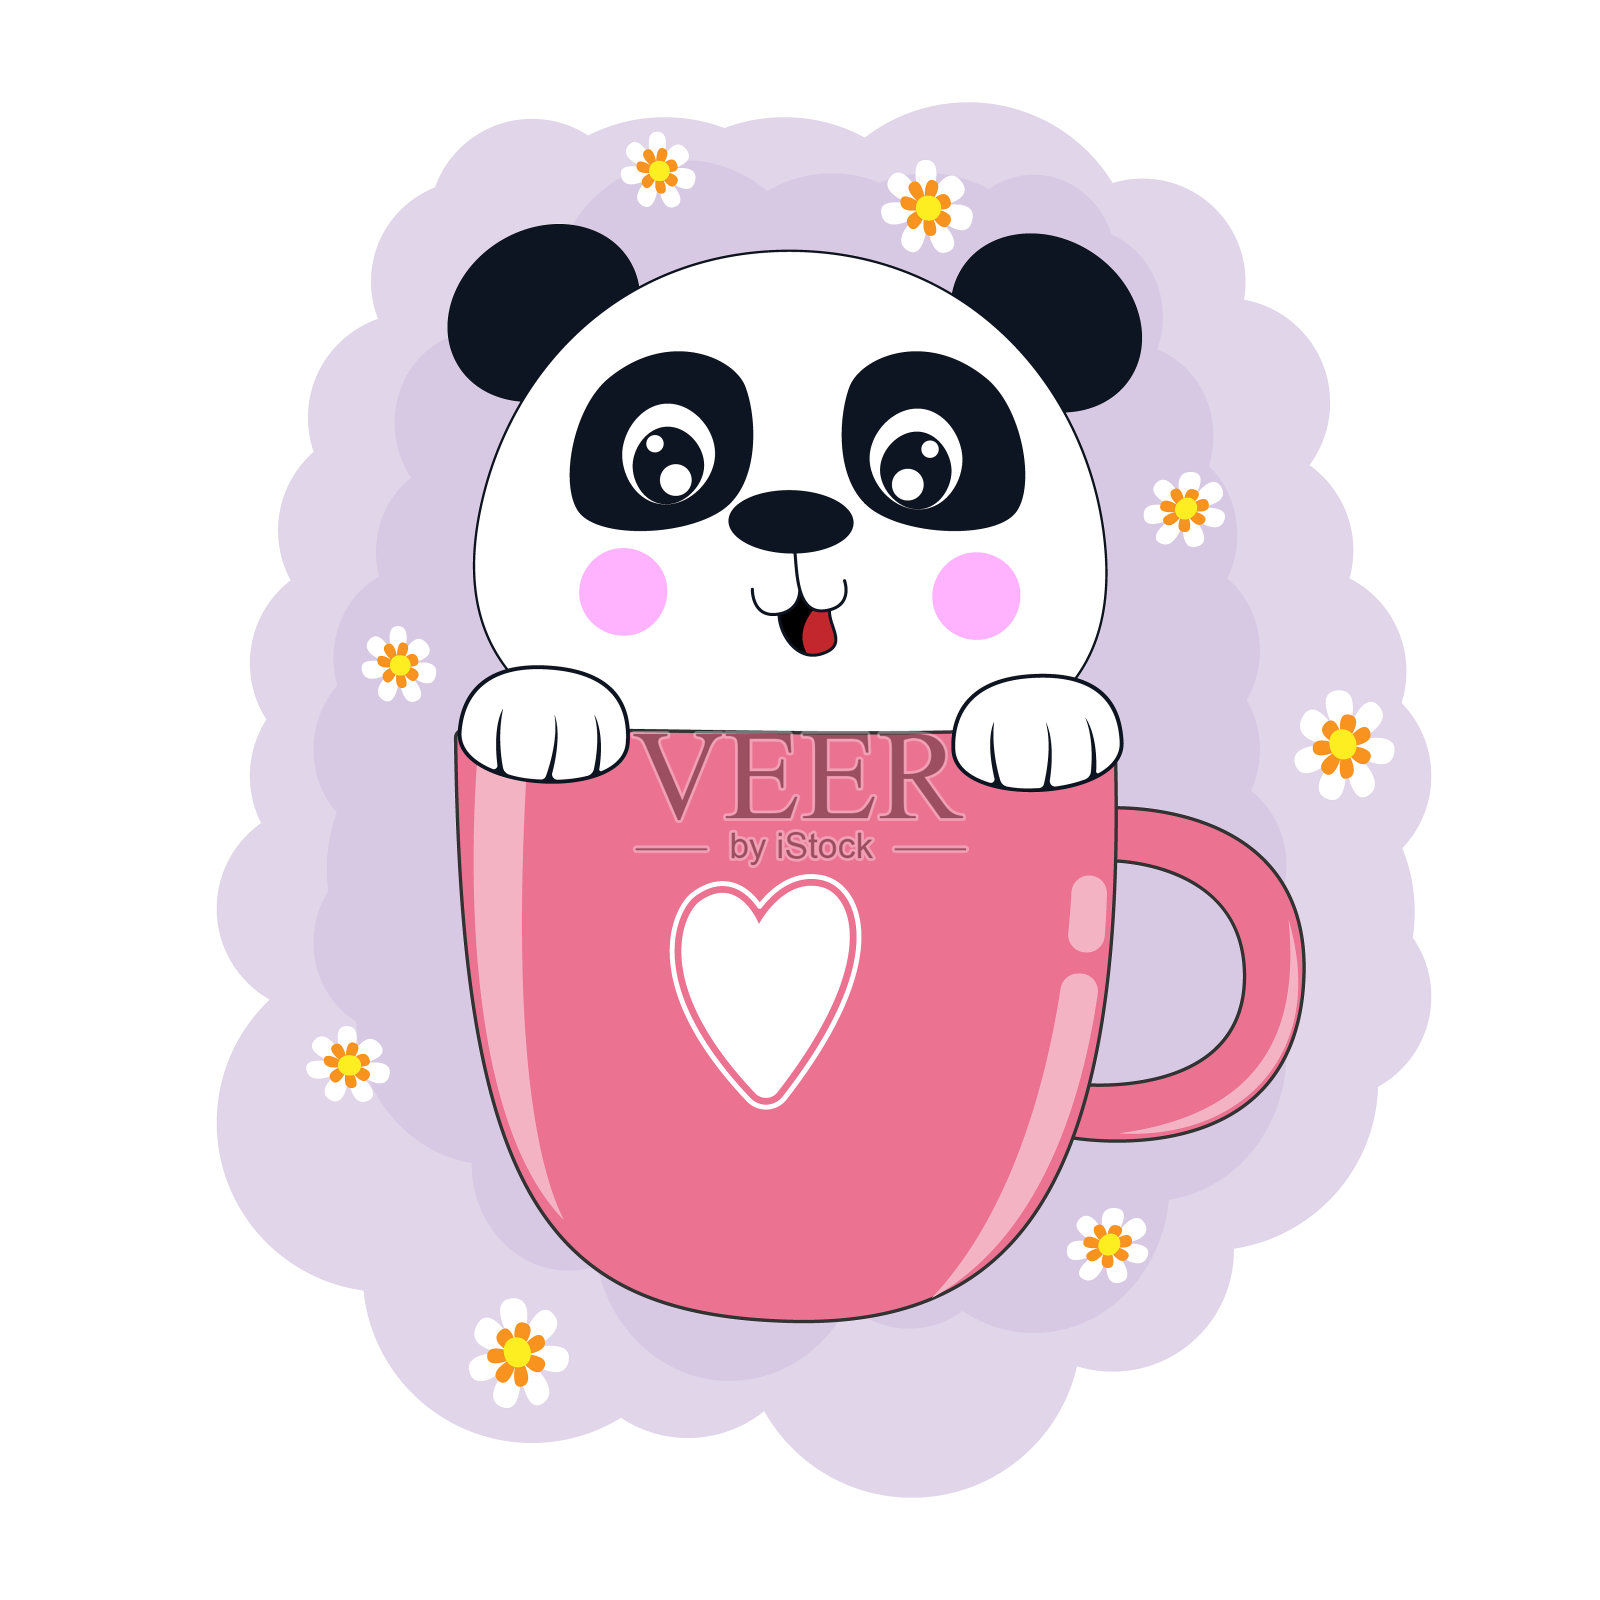 可爱的卡通熊熊猫在粉红色的咖啡杯。设计元素图片